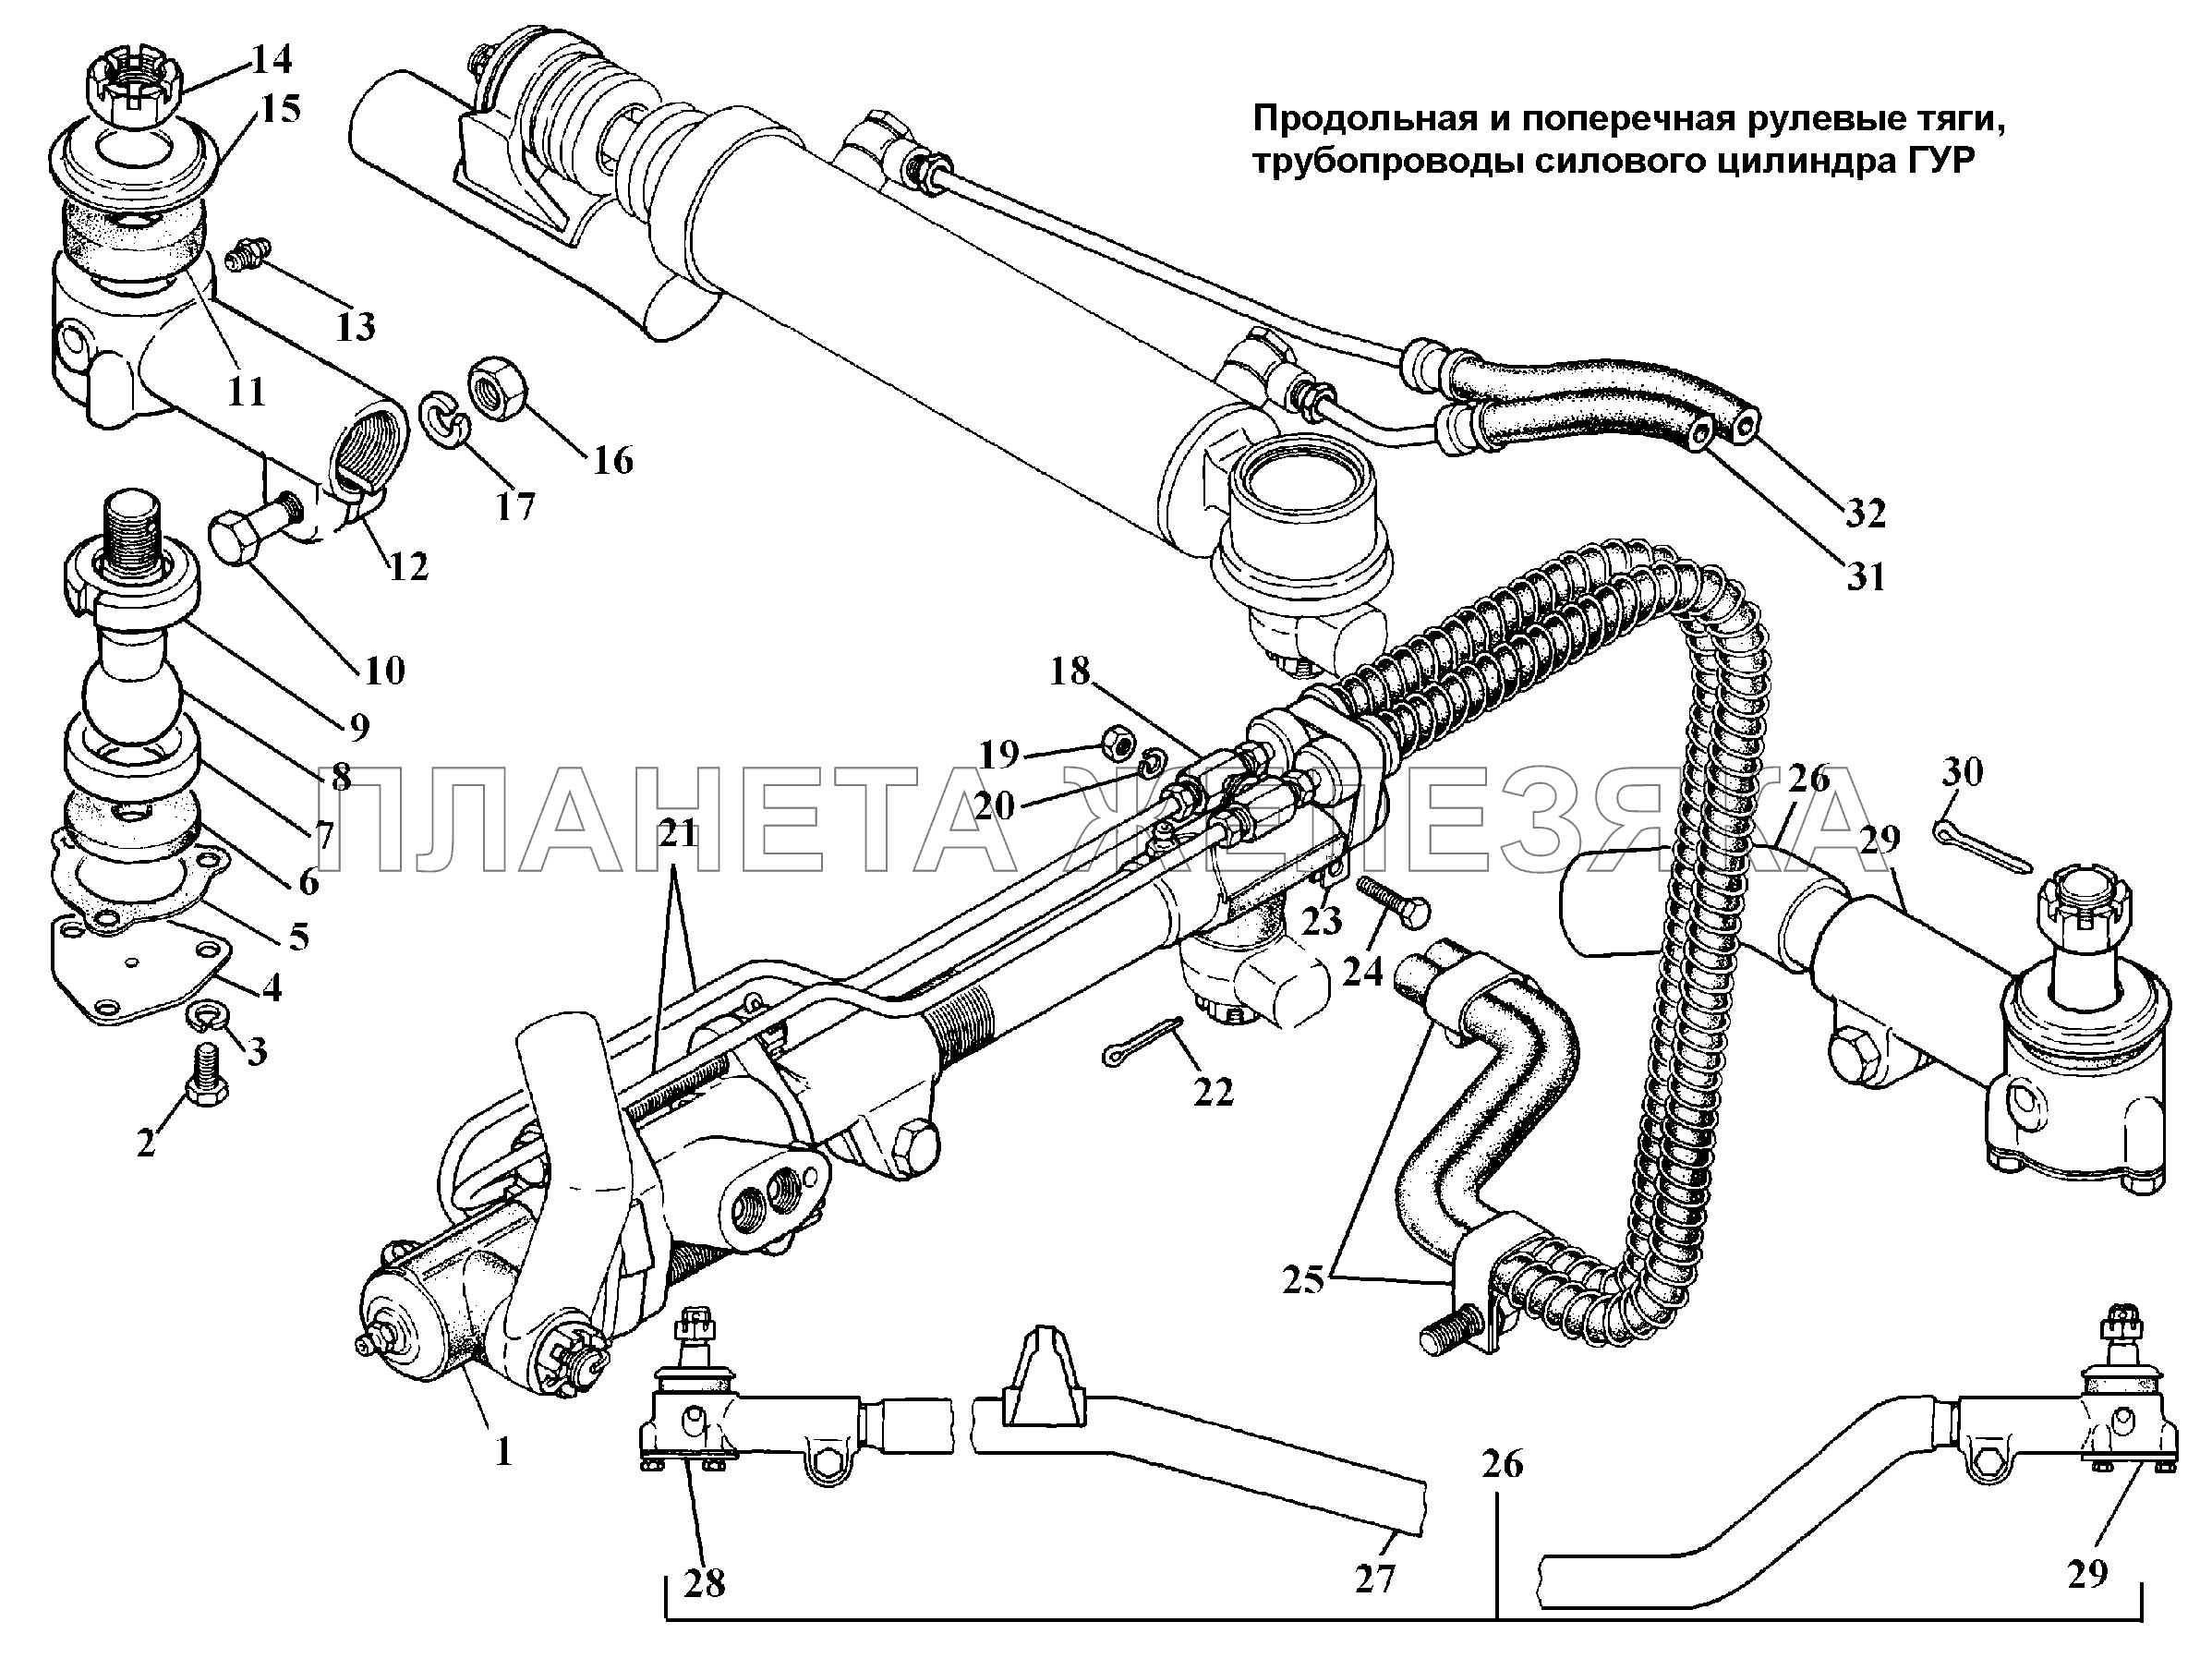 Рулевые тяги, трубопроводы силового цилиндра ГУР ГАЗ-3308